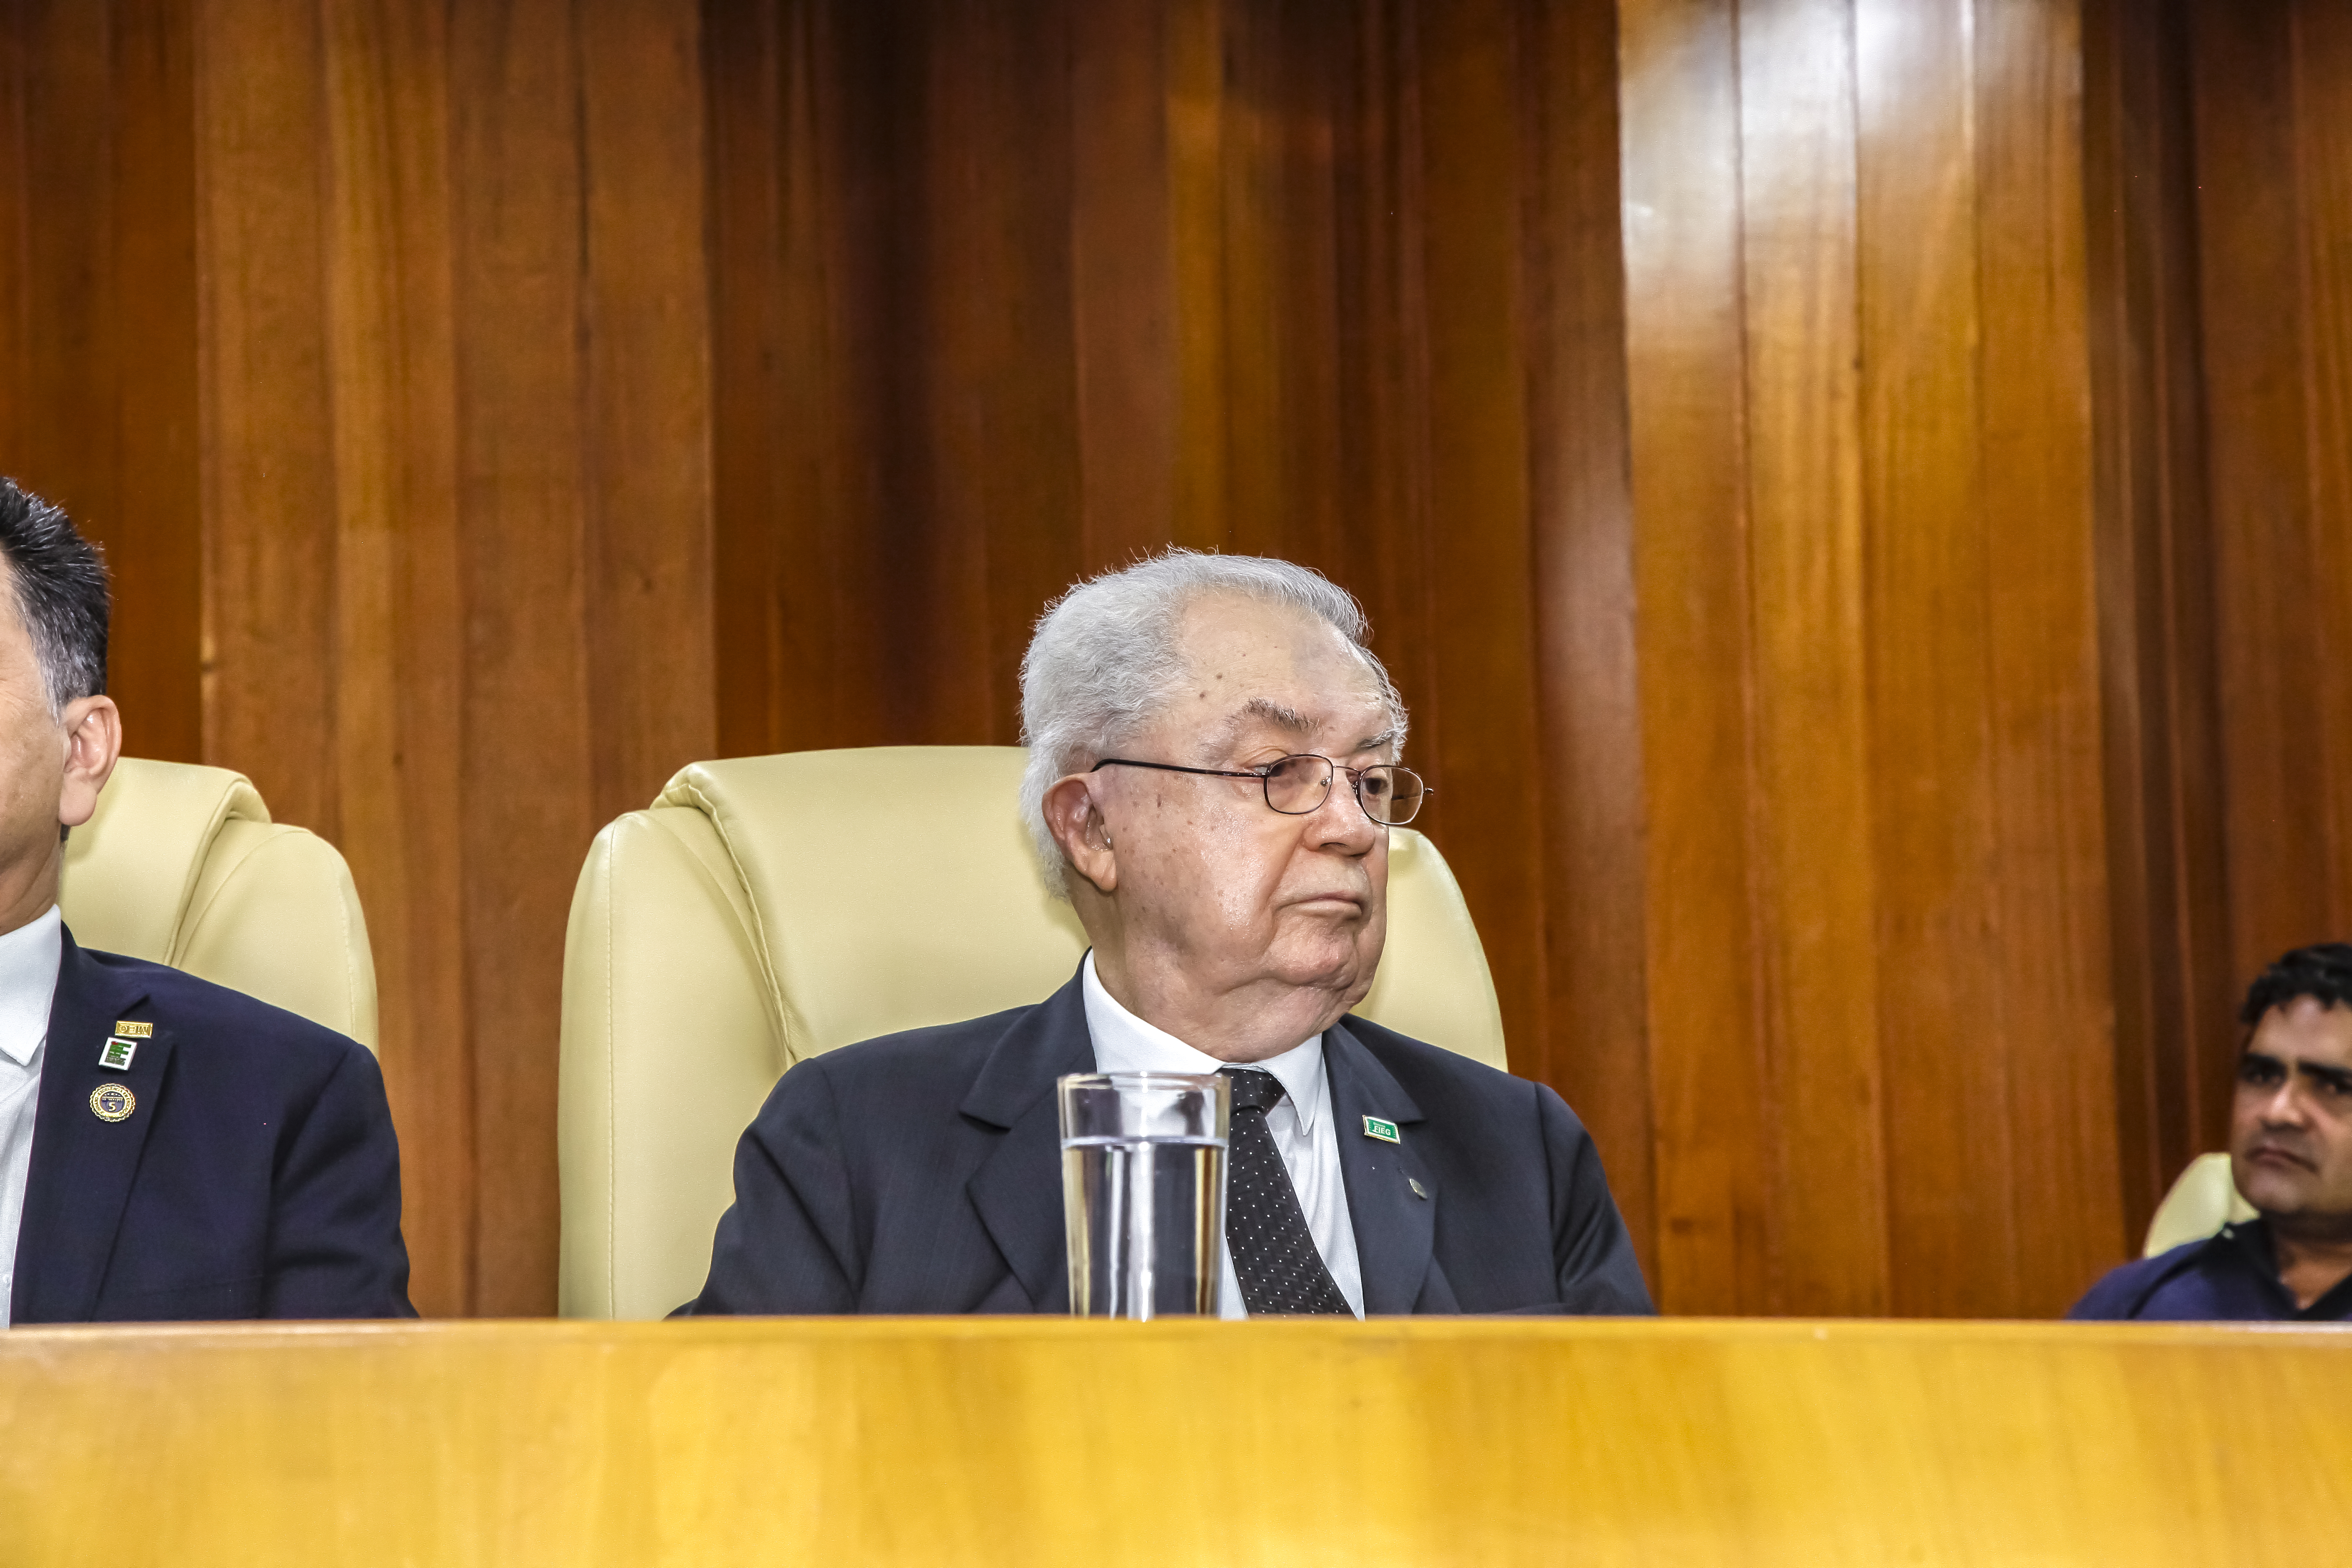 Hélio Naves na mesa da Câmara Municipal de Goiânia na sessão especial em razão dos 109 anos da Instituição e dos 10 anos dos institutos federais, ocasião em que foi homenageado